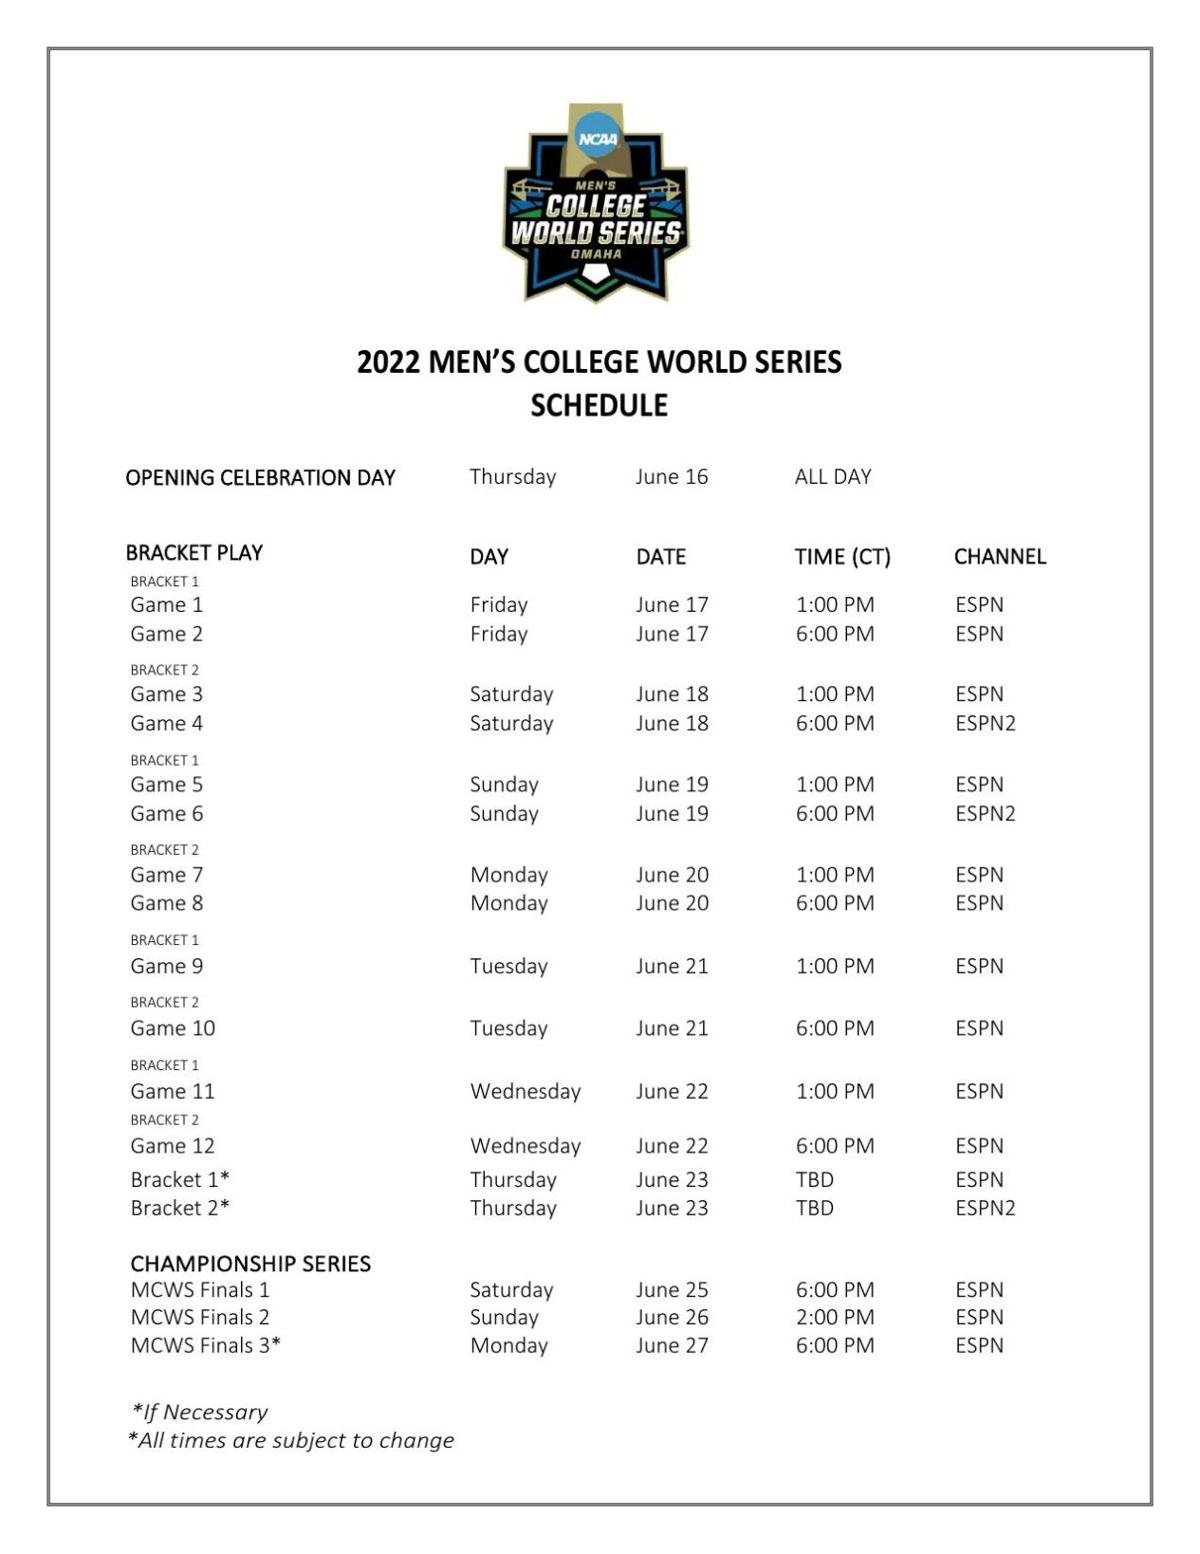 World Series schedule 2022: Dates, start times, channels, scores